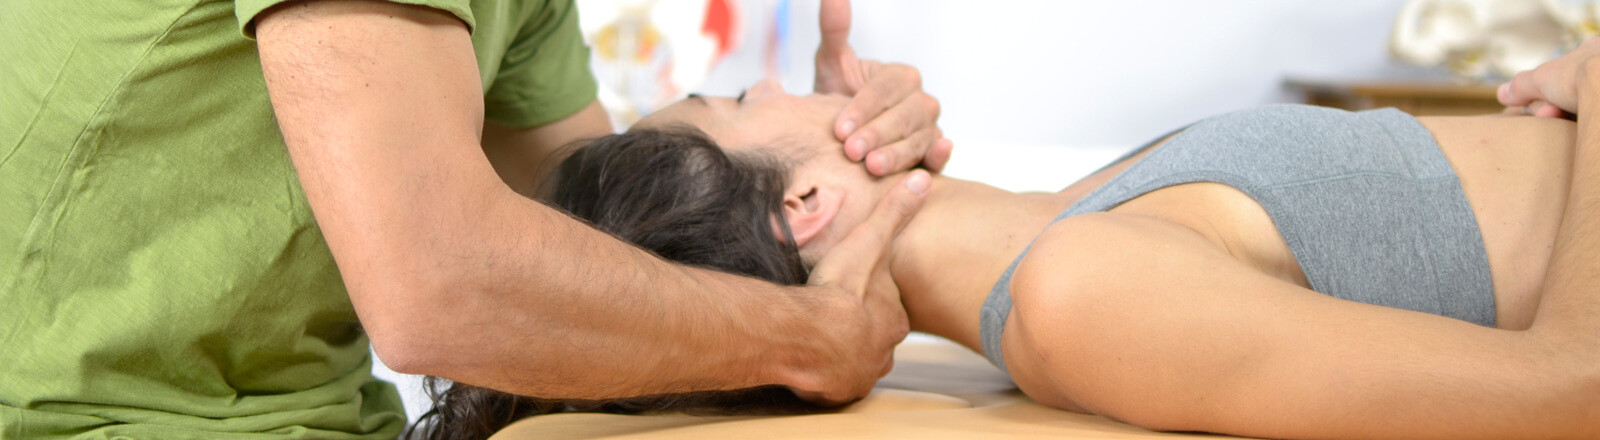 masaje terapeutico Madrid 